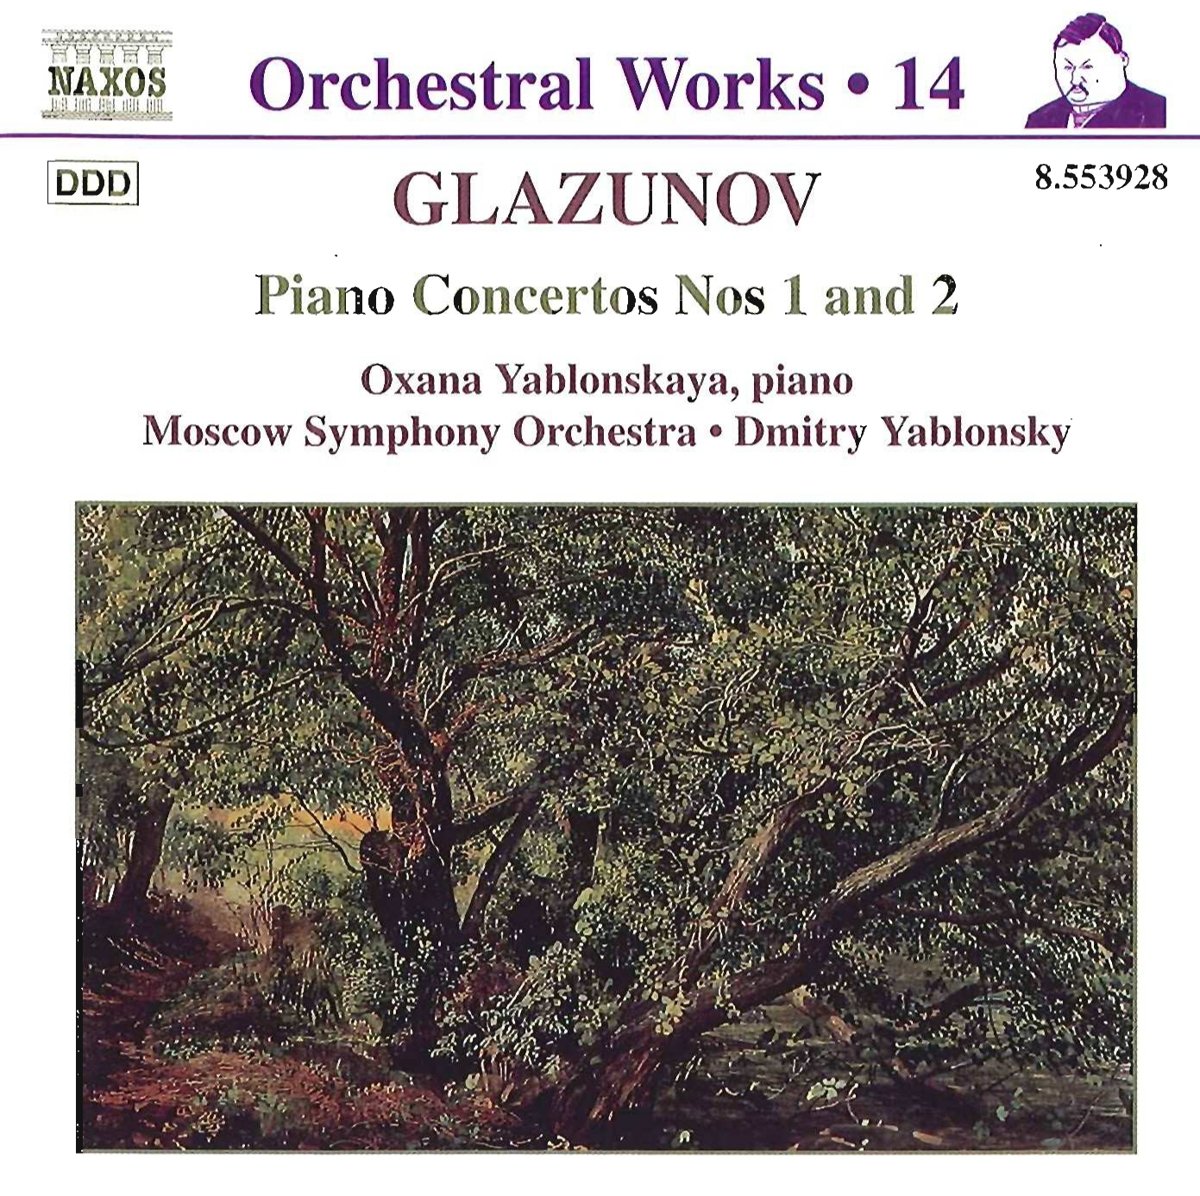 GLAZUNOV: Piano Concertos